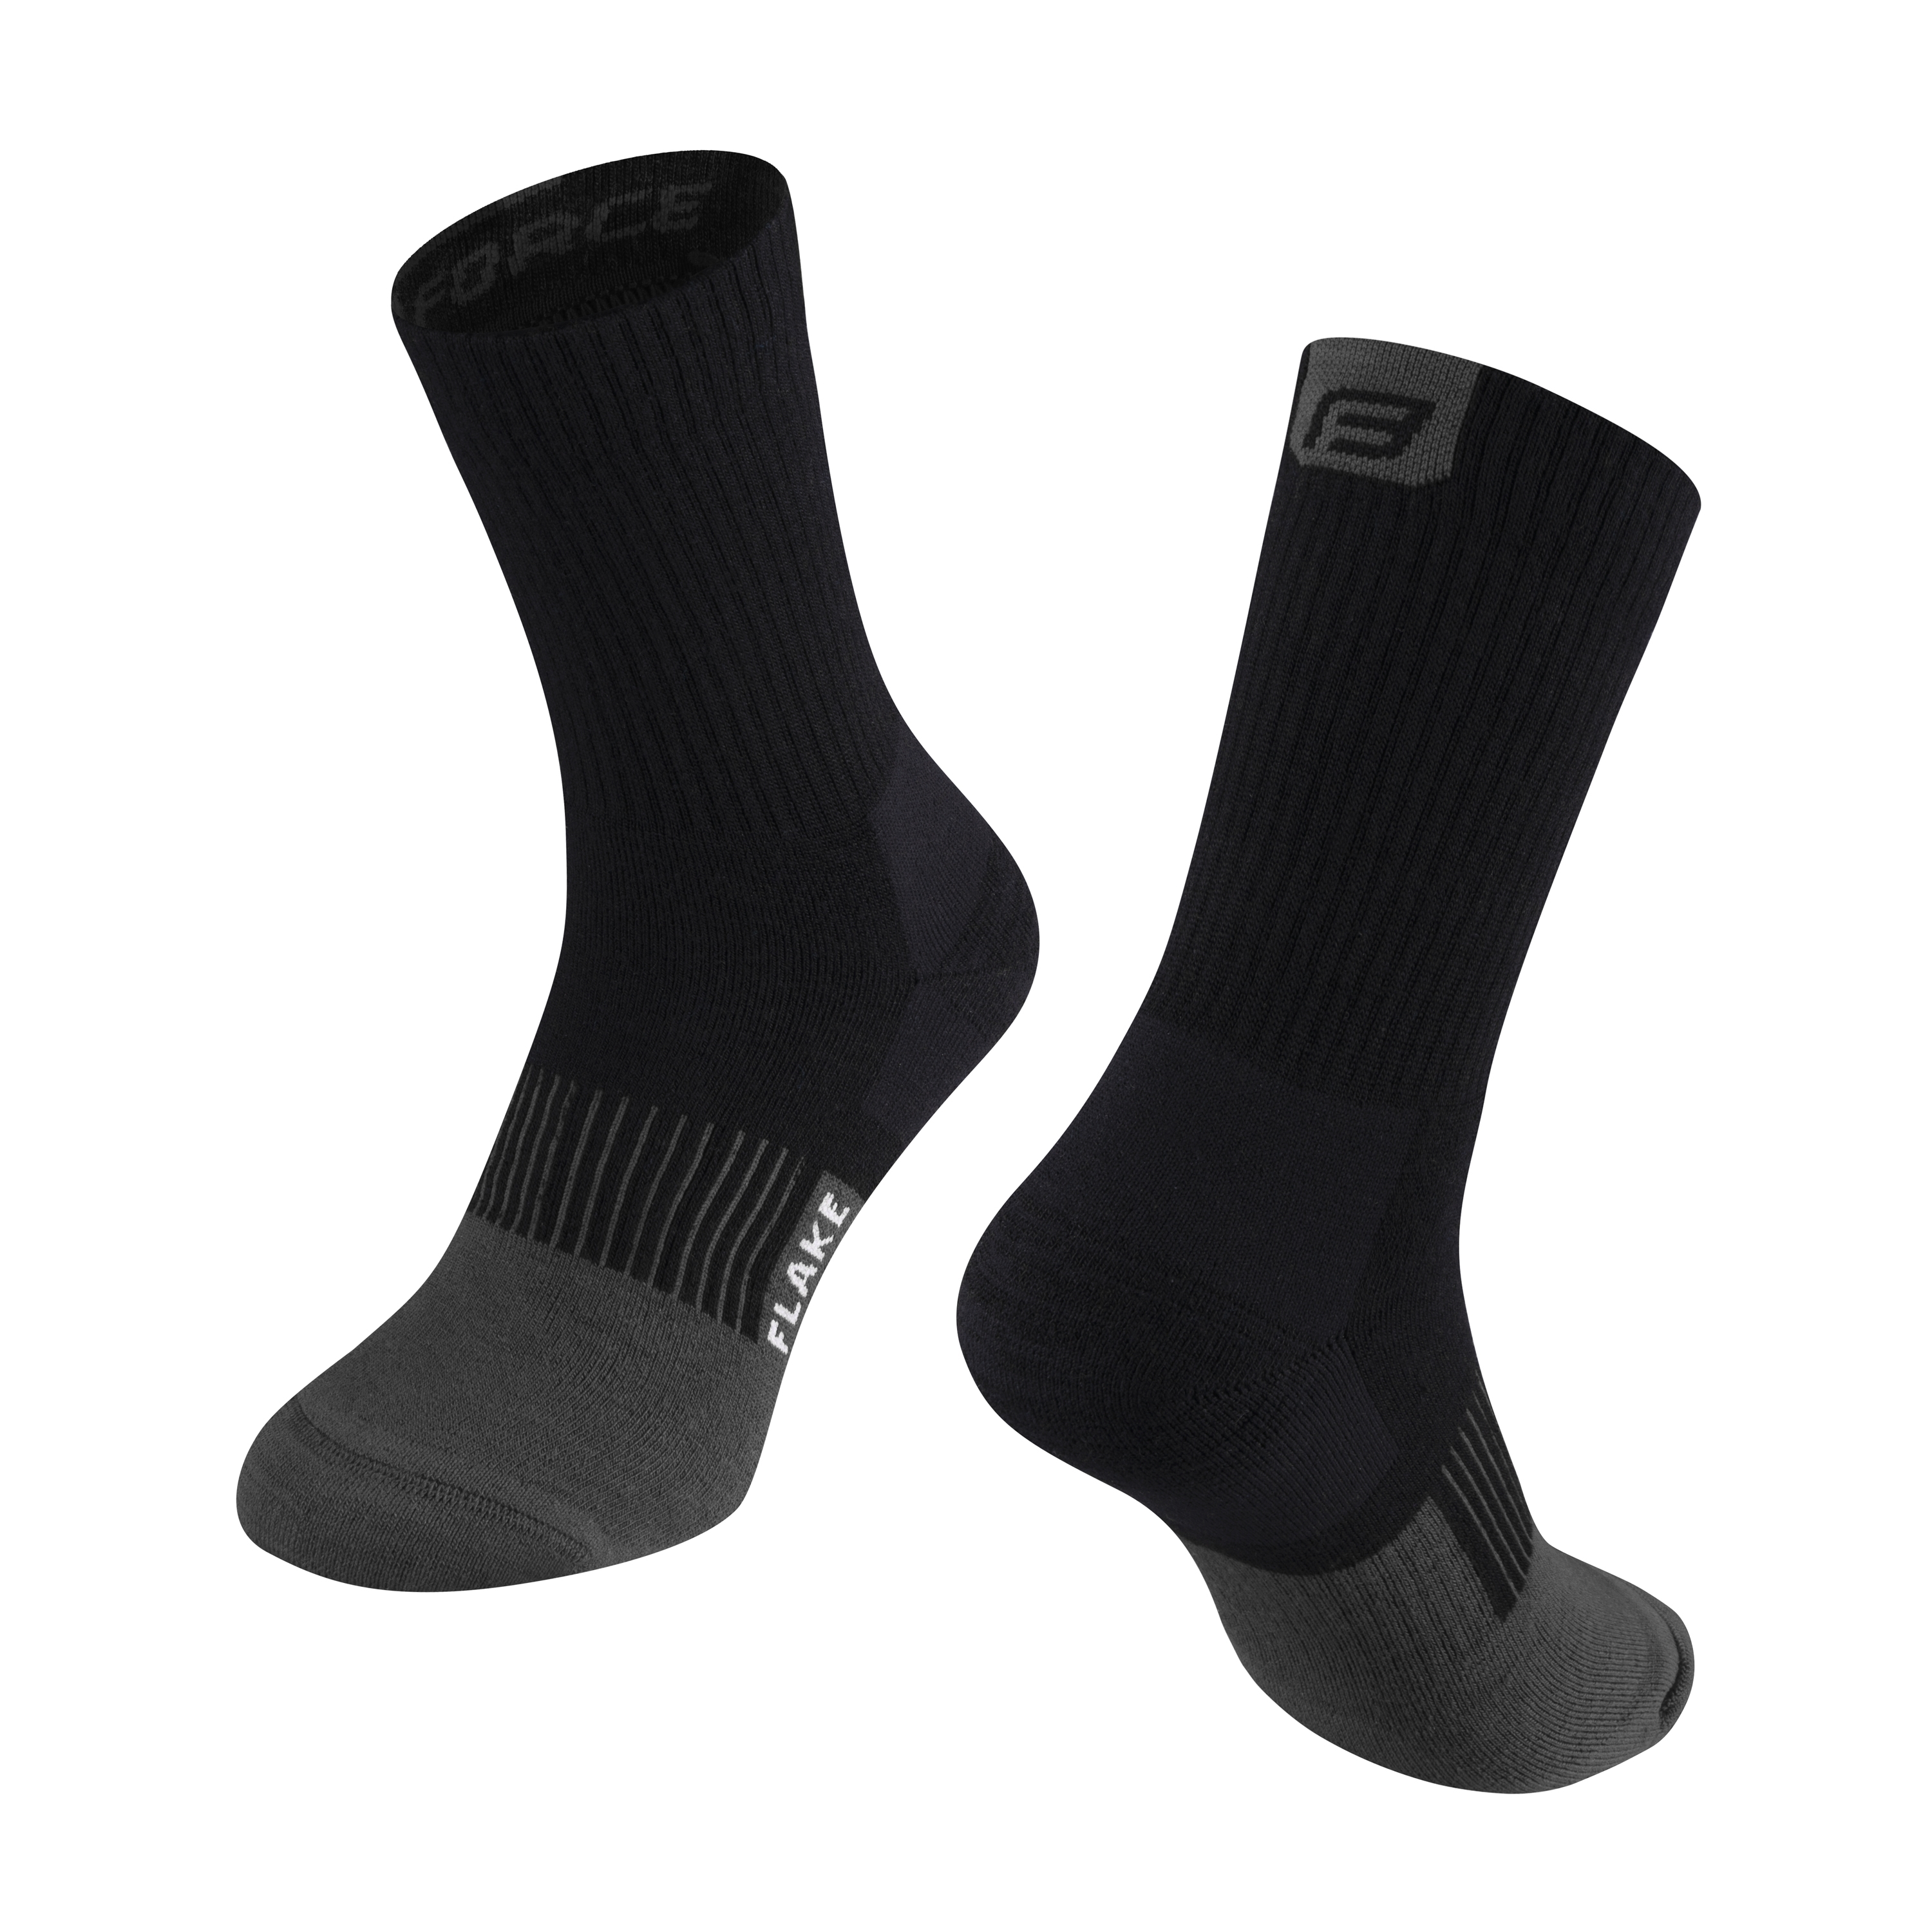 Zimní ponožky FORCE FLAKE černo-šedé S-M